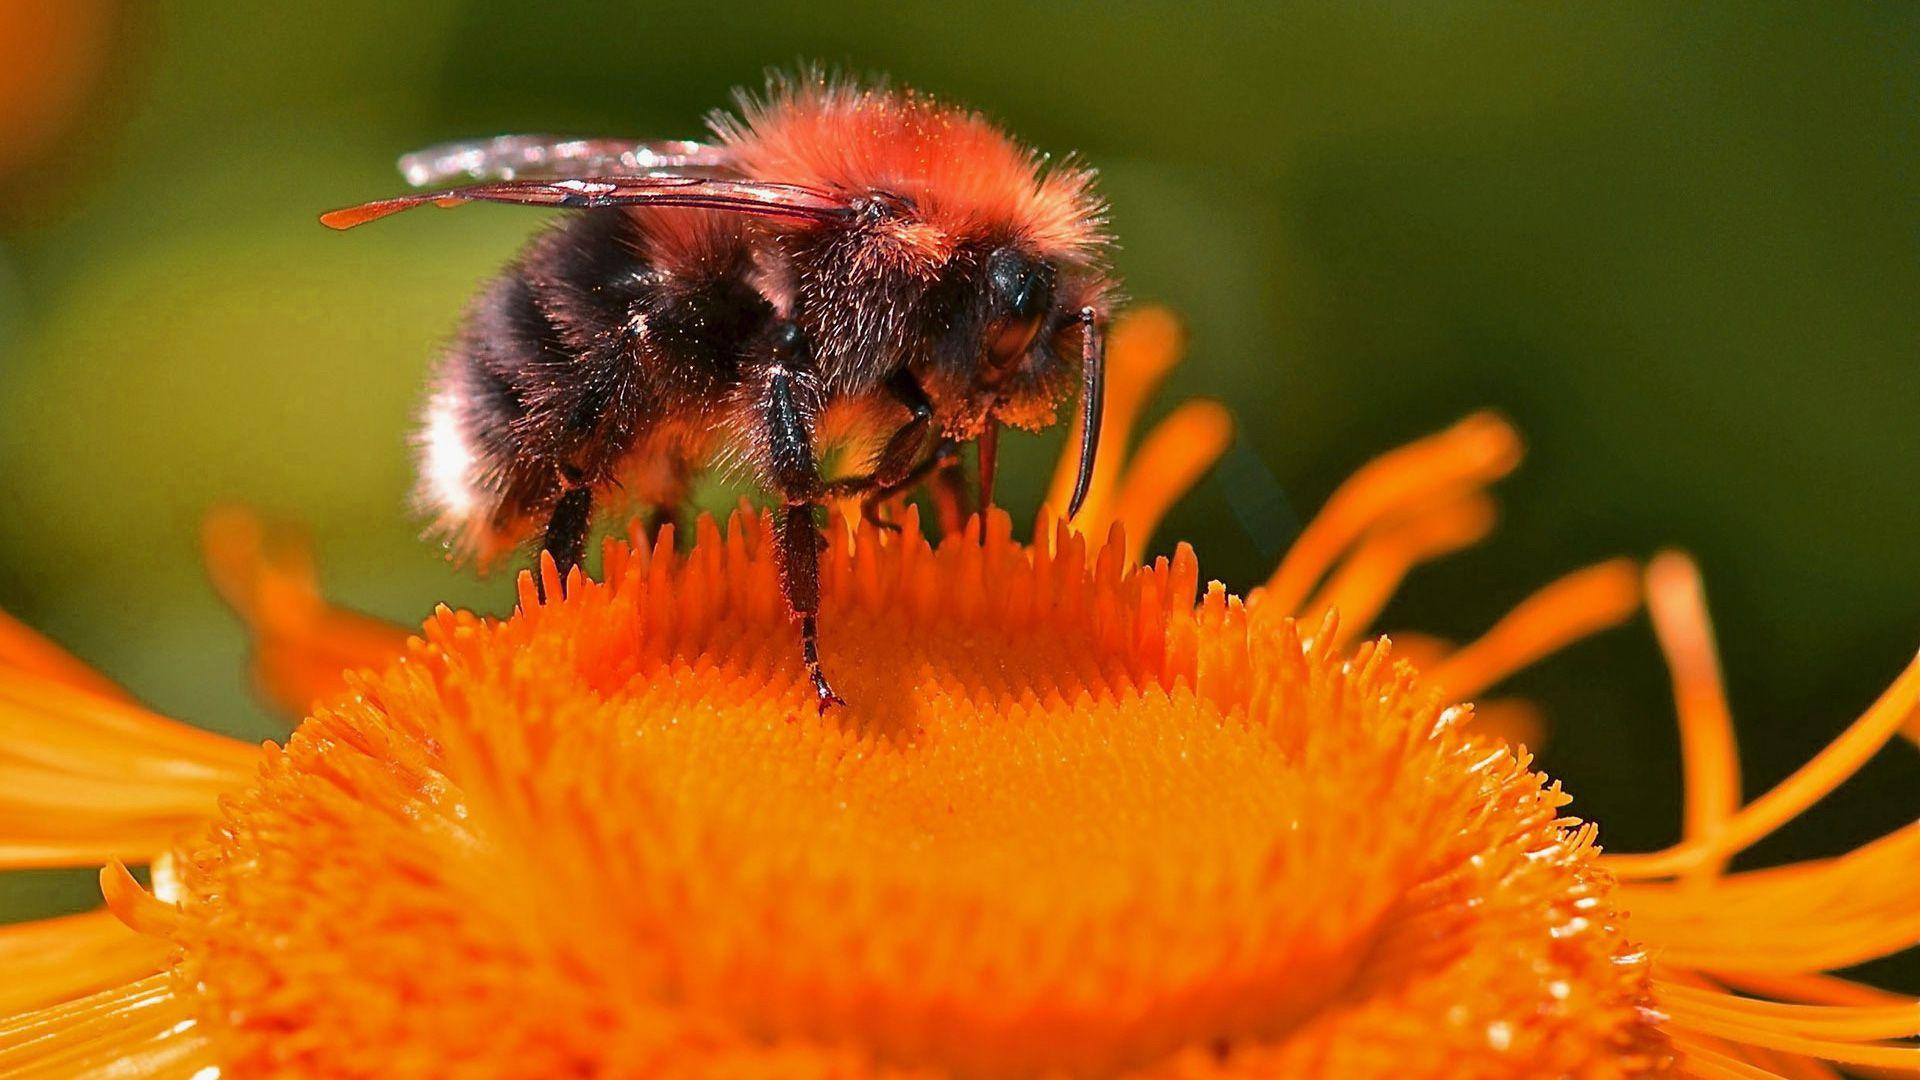 Cute Bee Desktop Wallpapers - Top Free Cute Bee Desktop Backgrounds ...